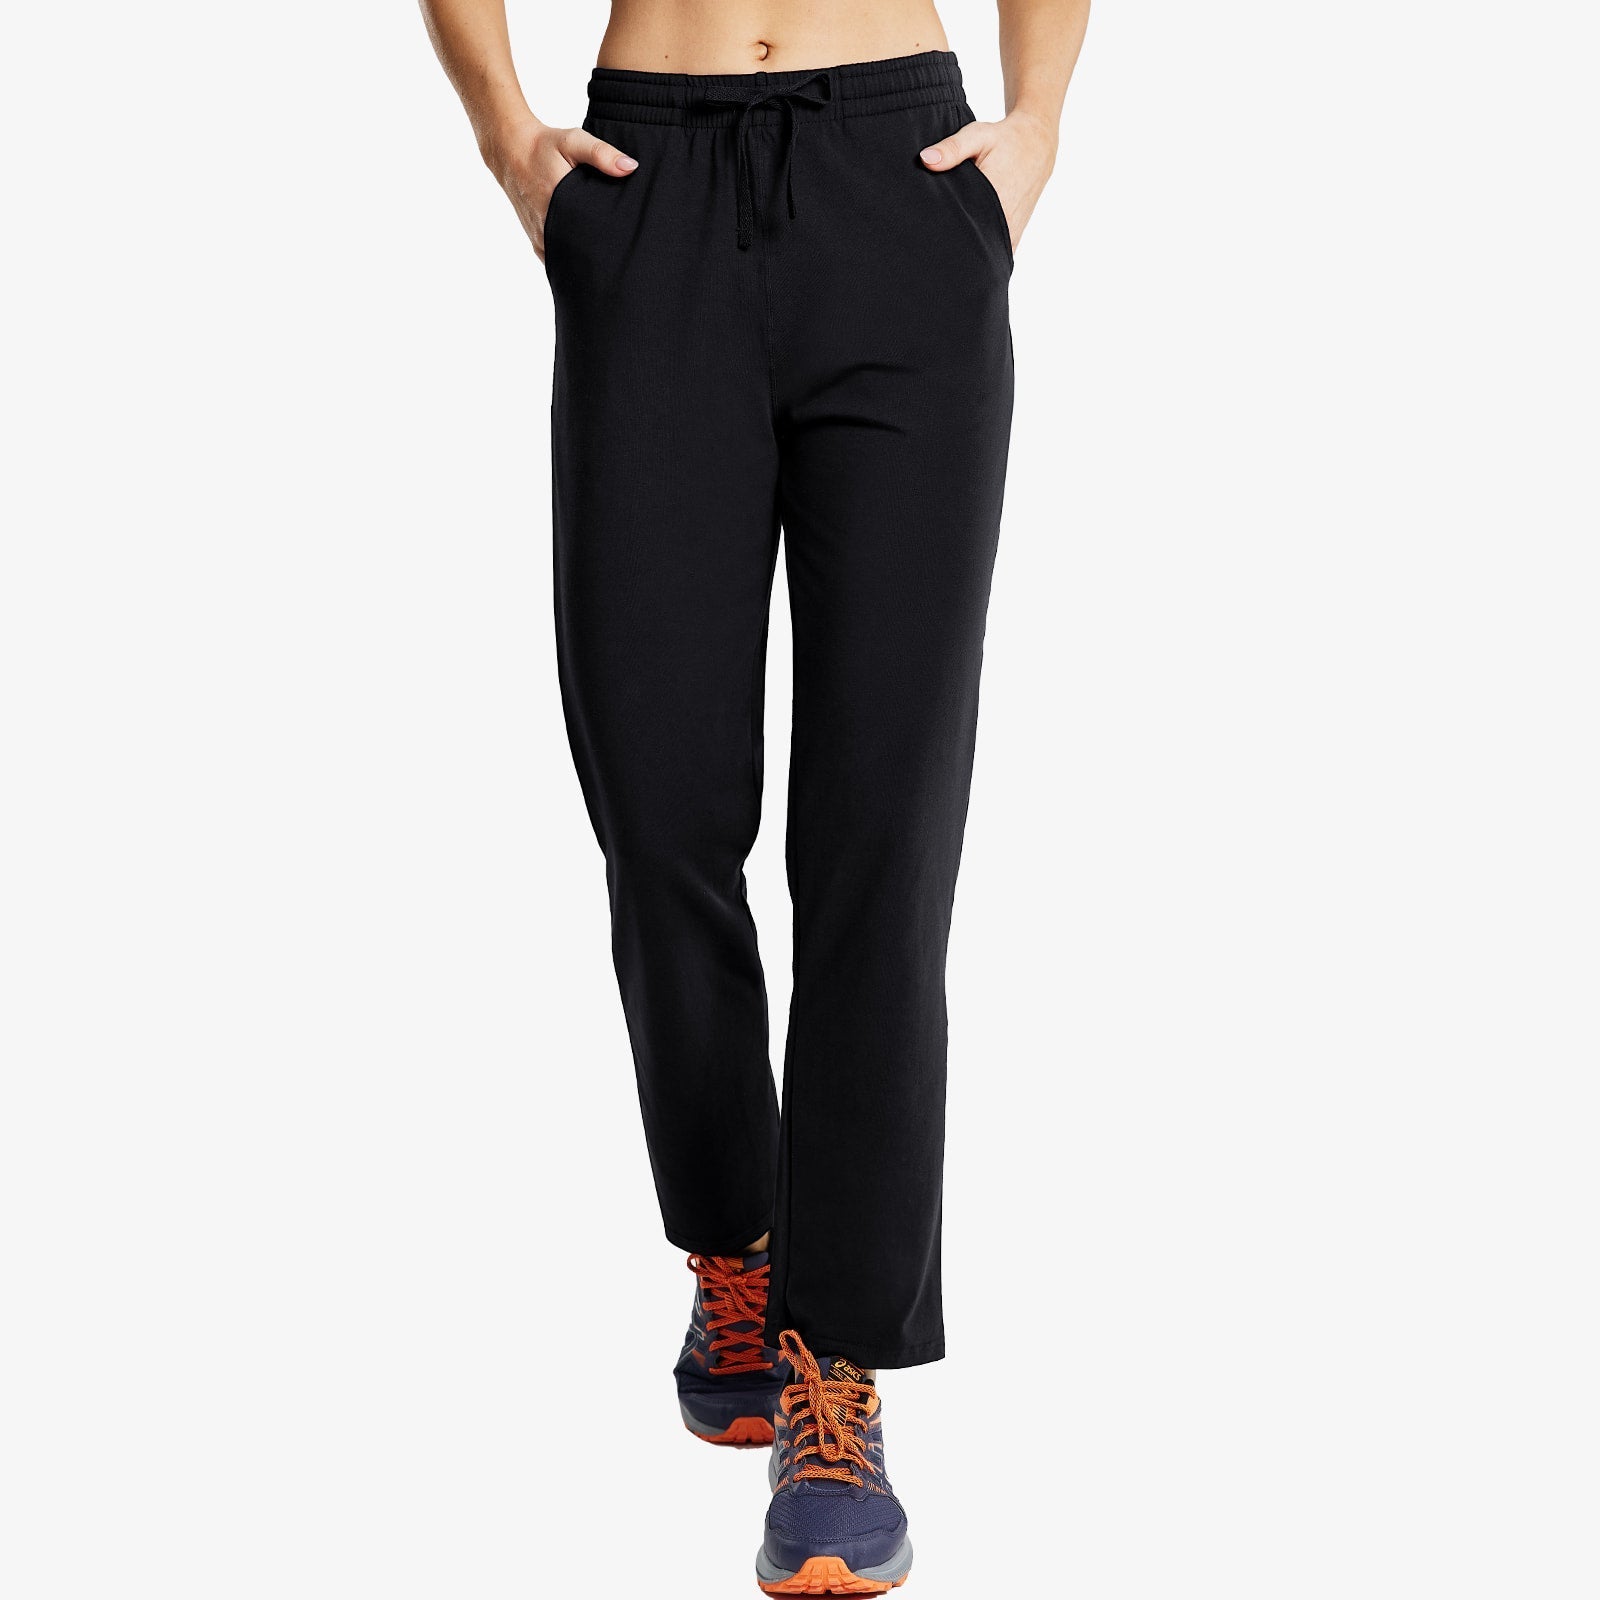 Women's Cotton Sweatpants Casual Drawstring Pants - Black / XS